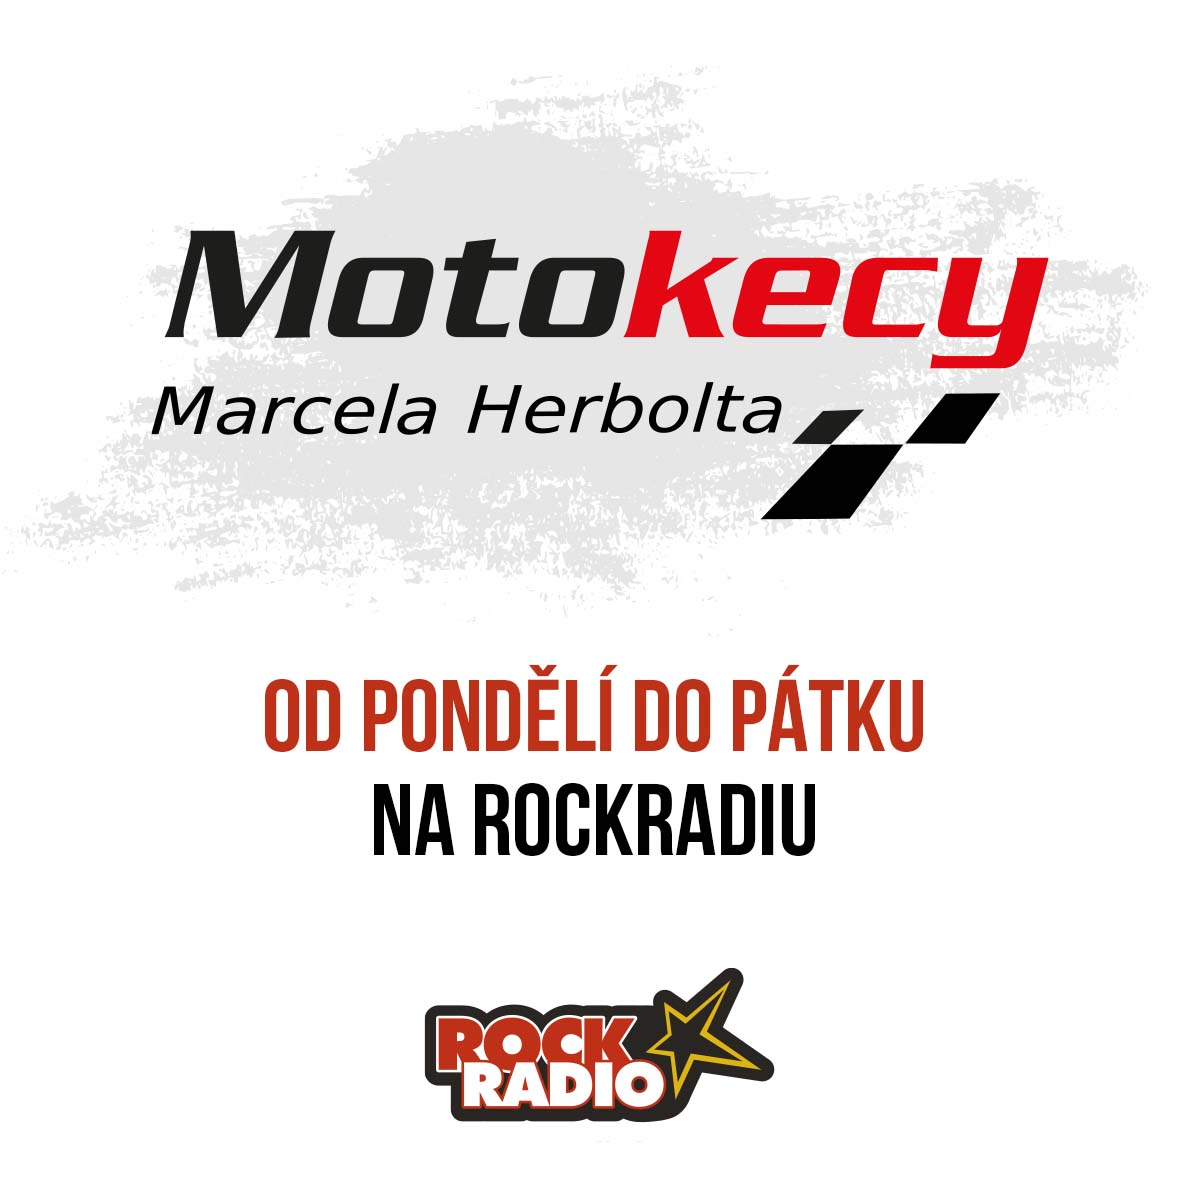 Motokecy Marcela Herbolta na úterý 19. září